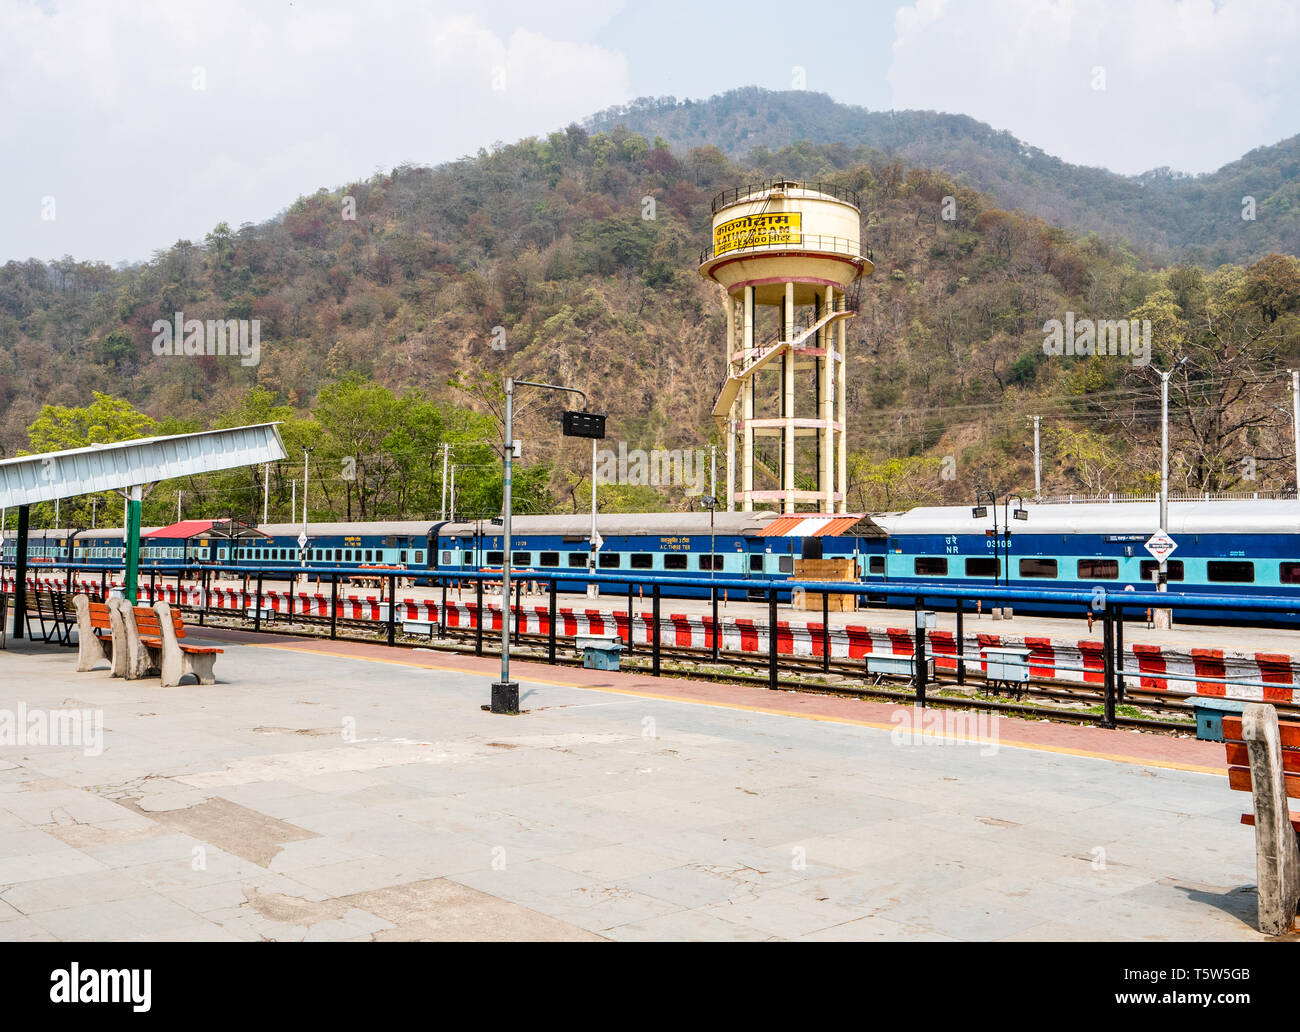 Ramgarh Indian Railways station in Uttarakhand im Norden Indiens mit dem Shatabdi Express warten auf New Delhi reisen Stockfoto